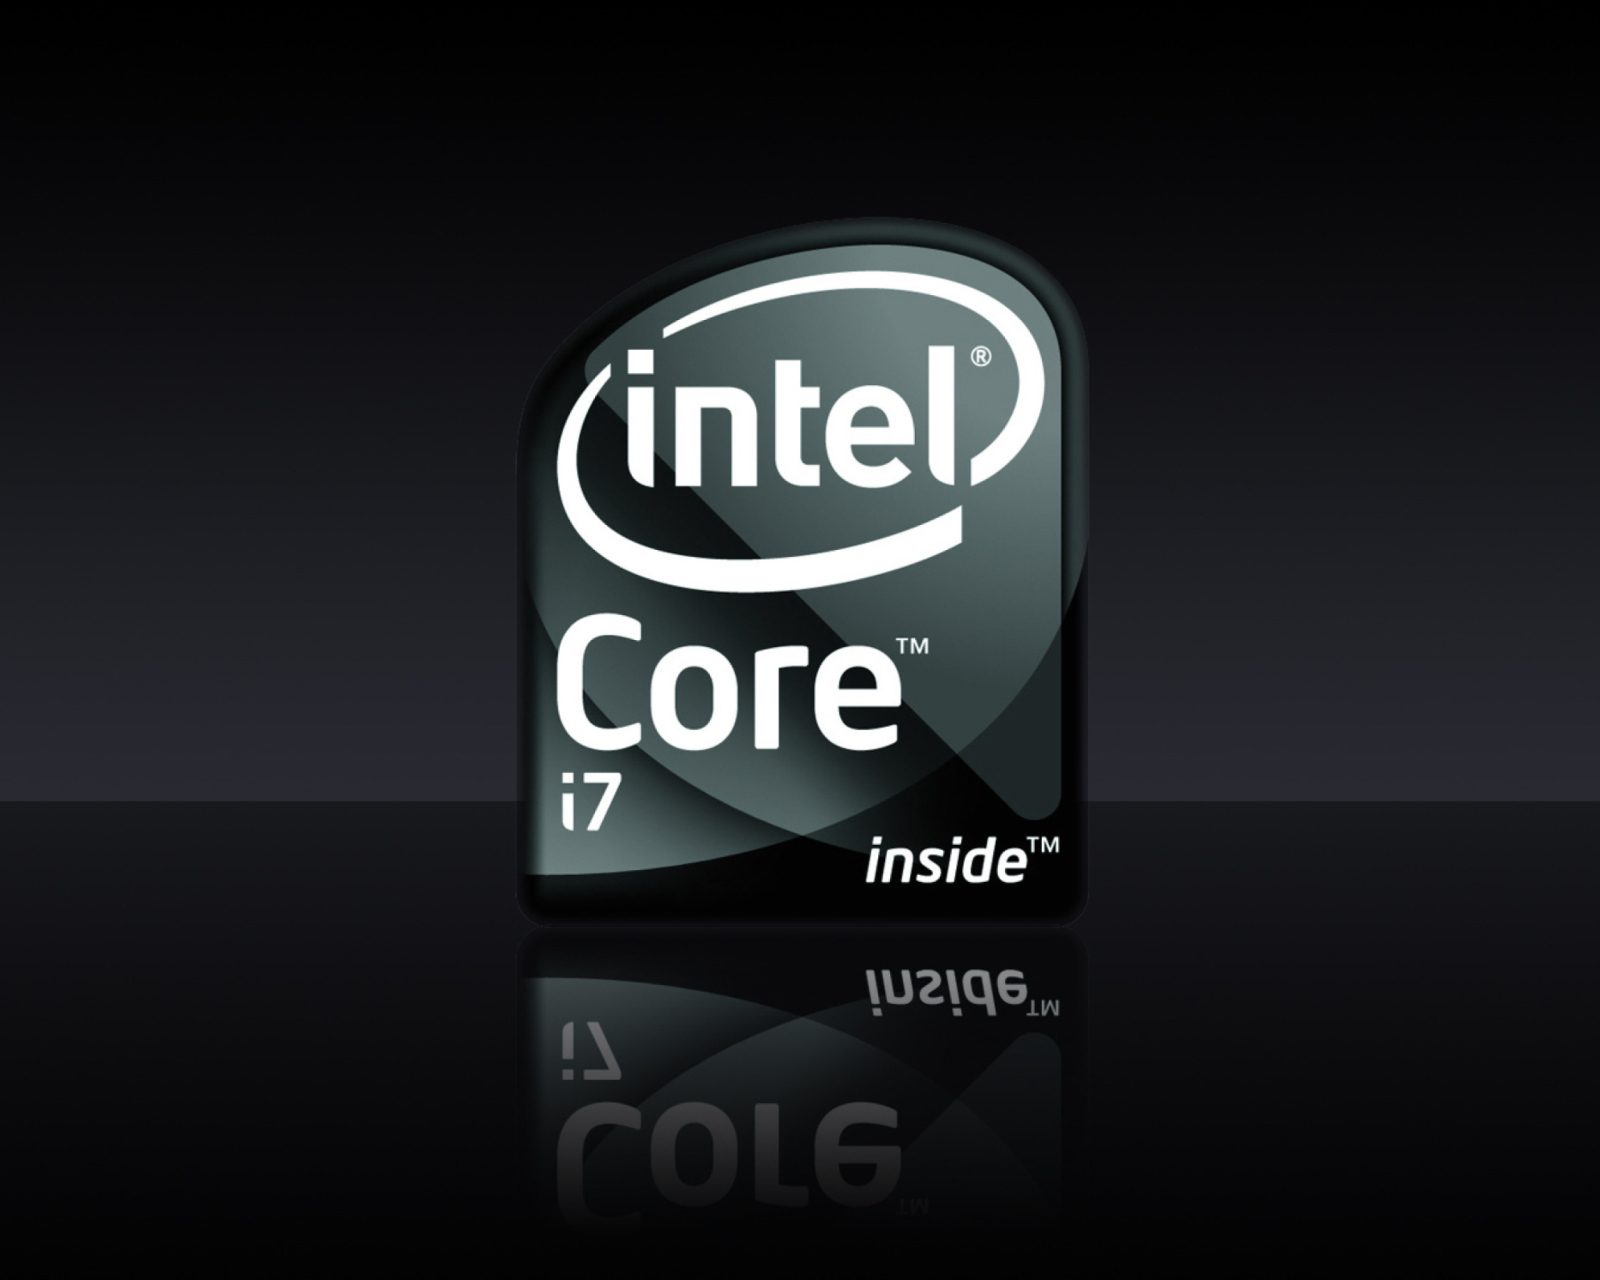 Intel Core I7 wallpaper 1600x1280